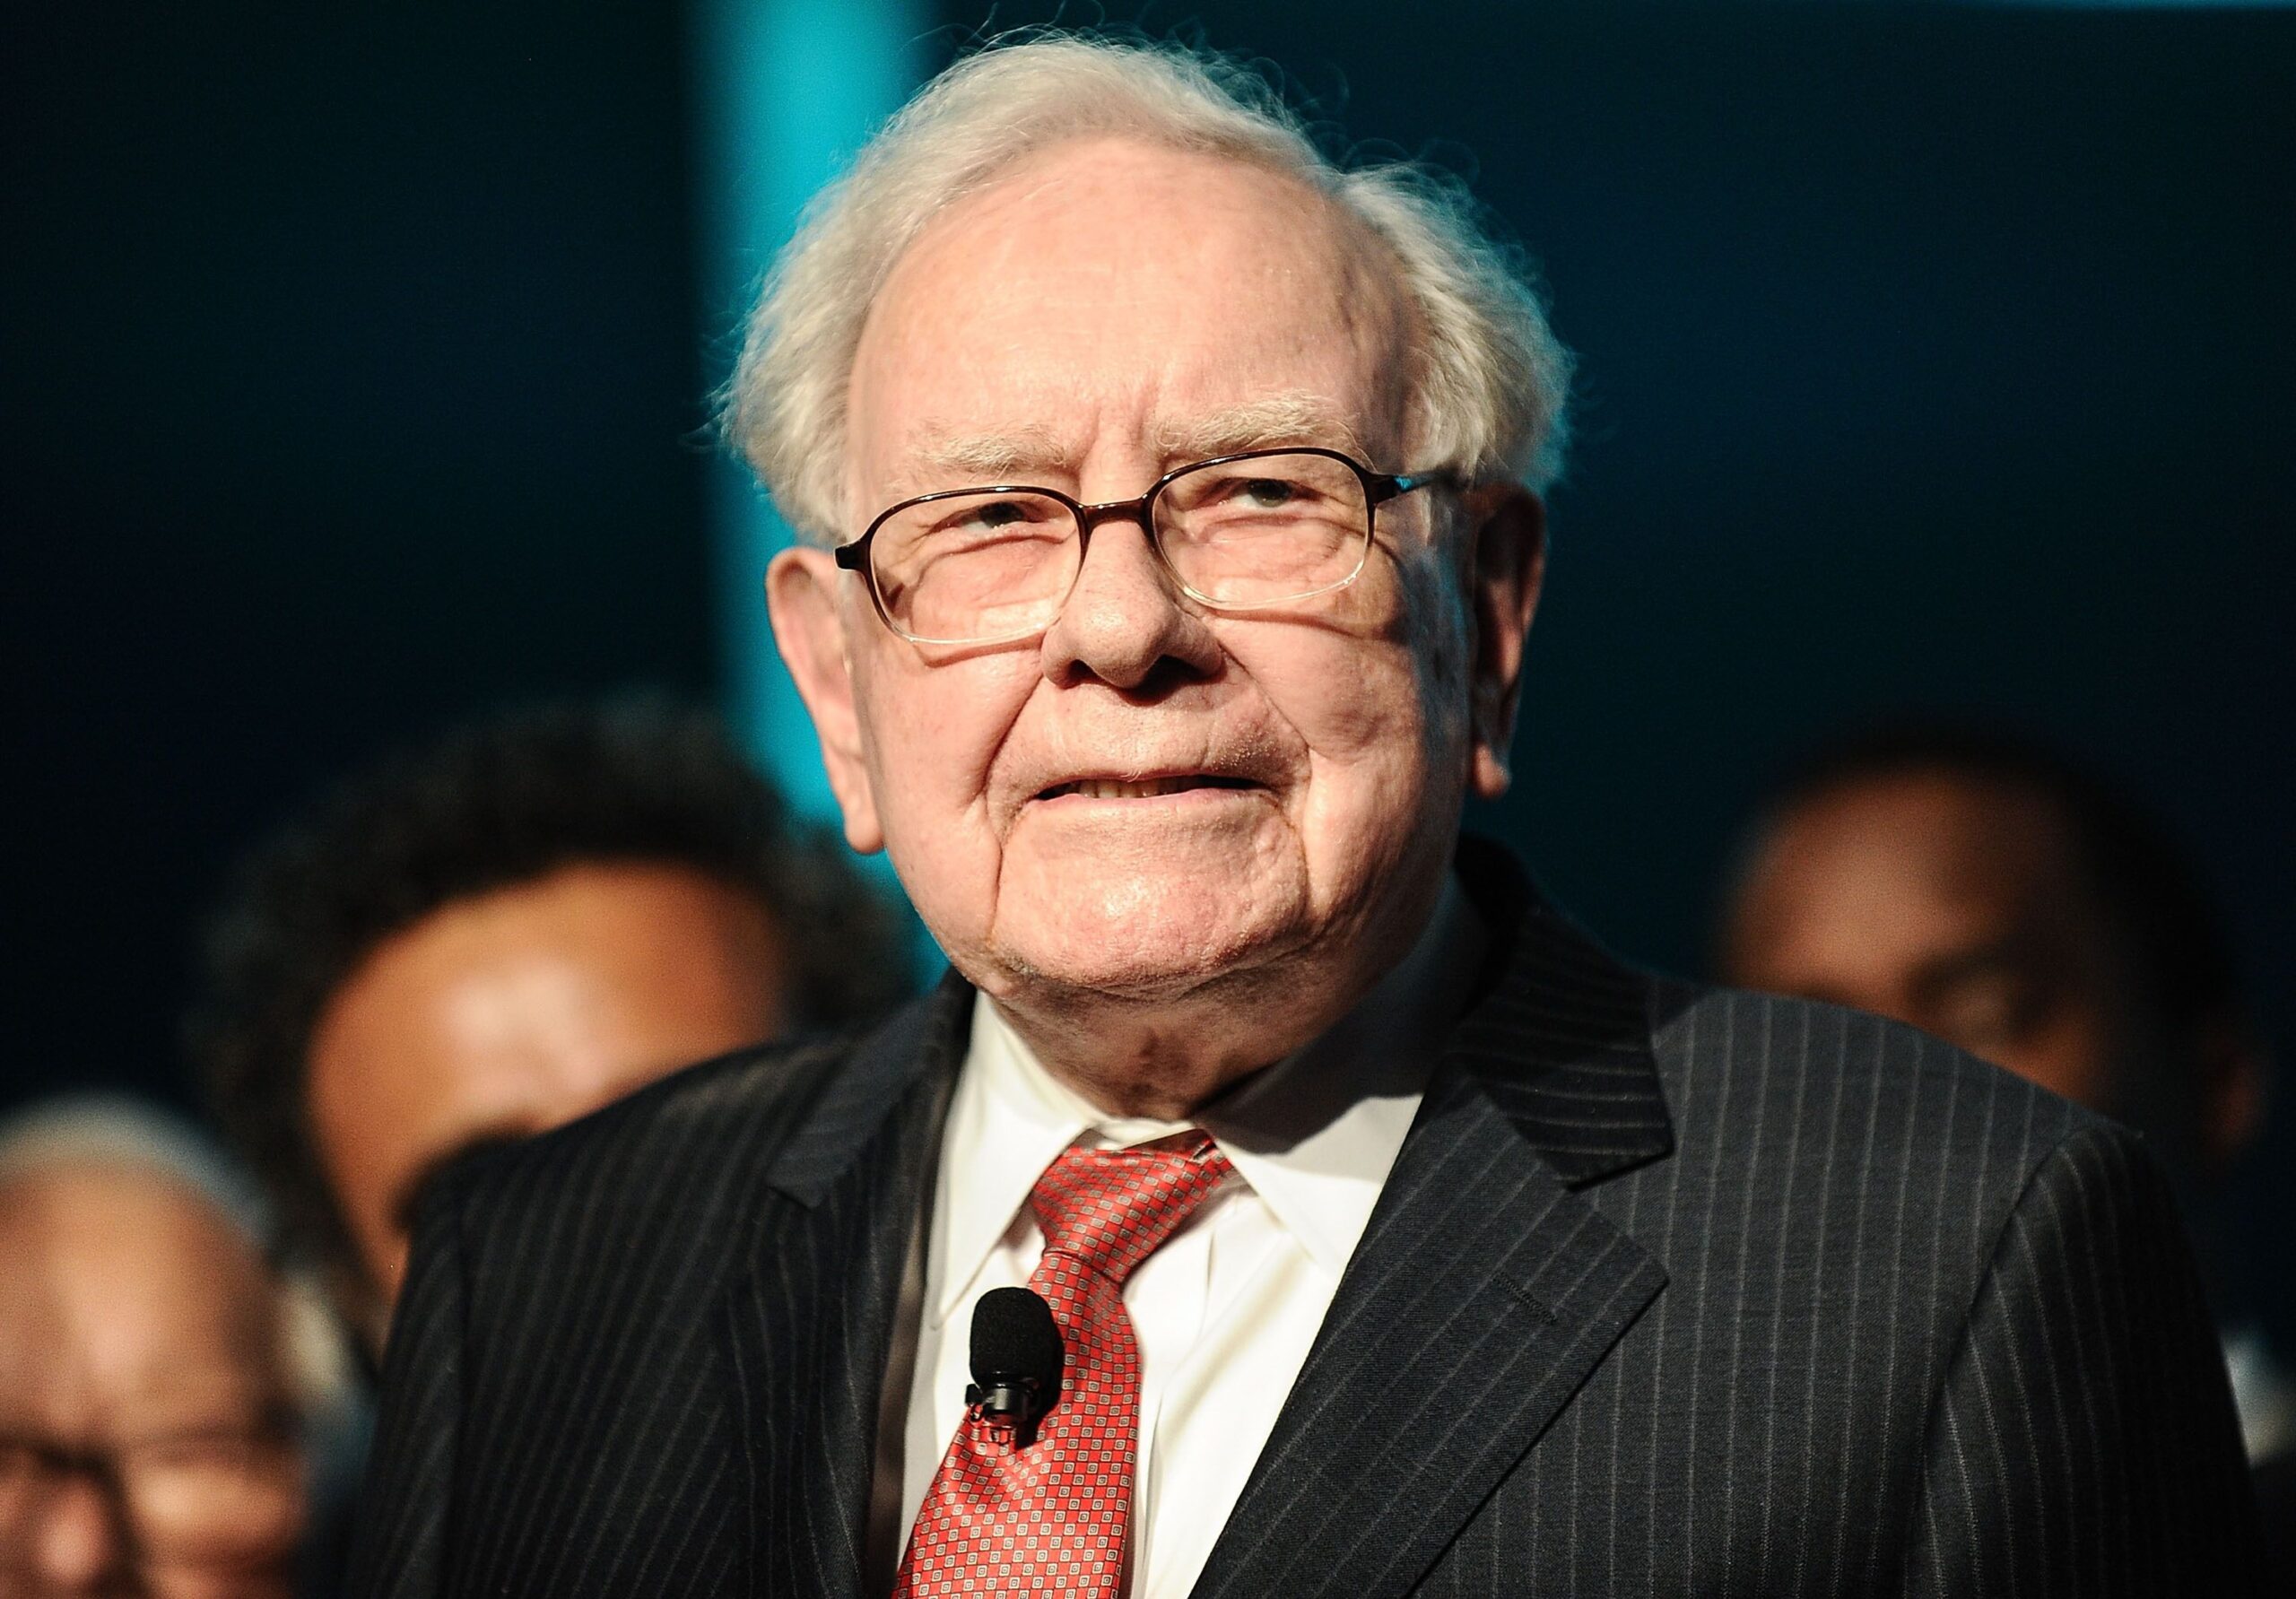 Warren Buffett anses allmänt vara en av de största investerarna genom tiderna, men om du skulle fråga honom vem han tycker är den största investeraren, skulle han troligen nämna en man: hans lärare, Benjamin Graham. Vi tittar på tre tidlösa investeringsprinciper som utvecklades av Benjamin Graham.